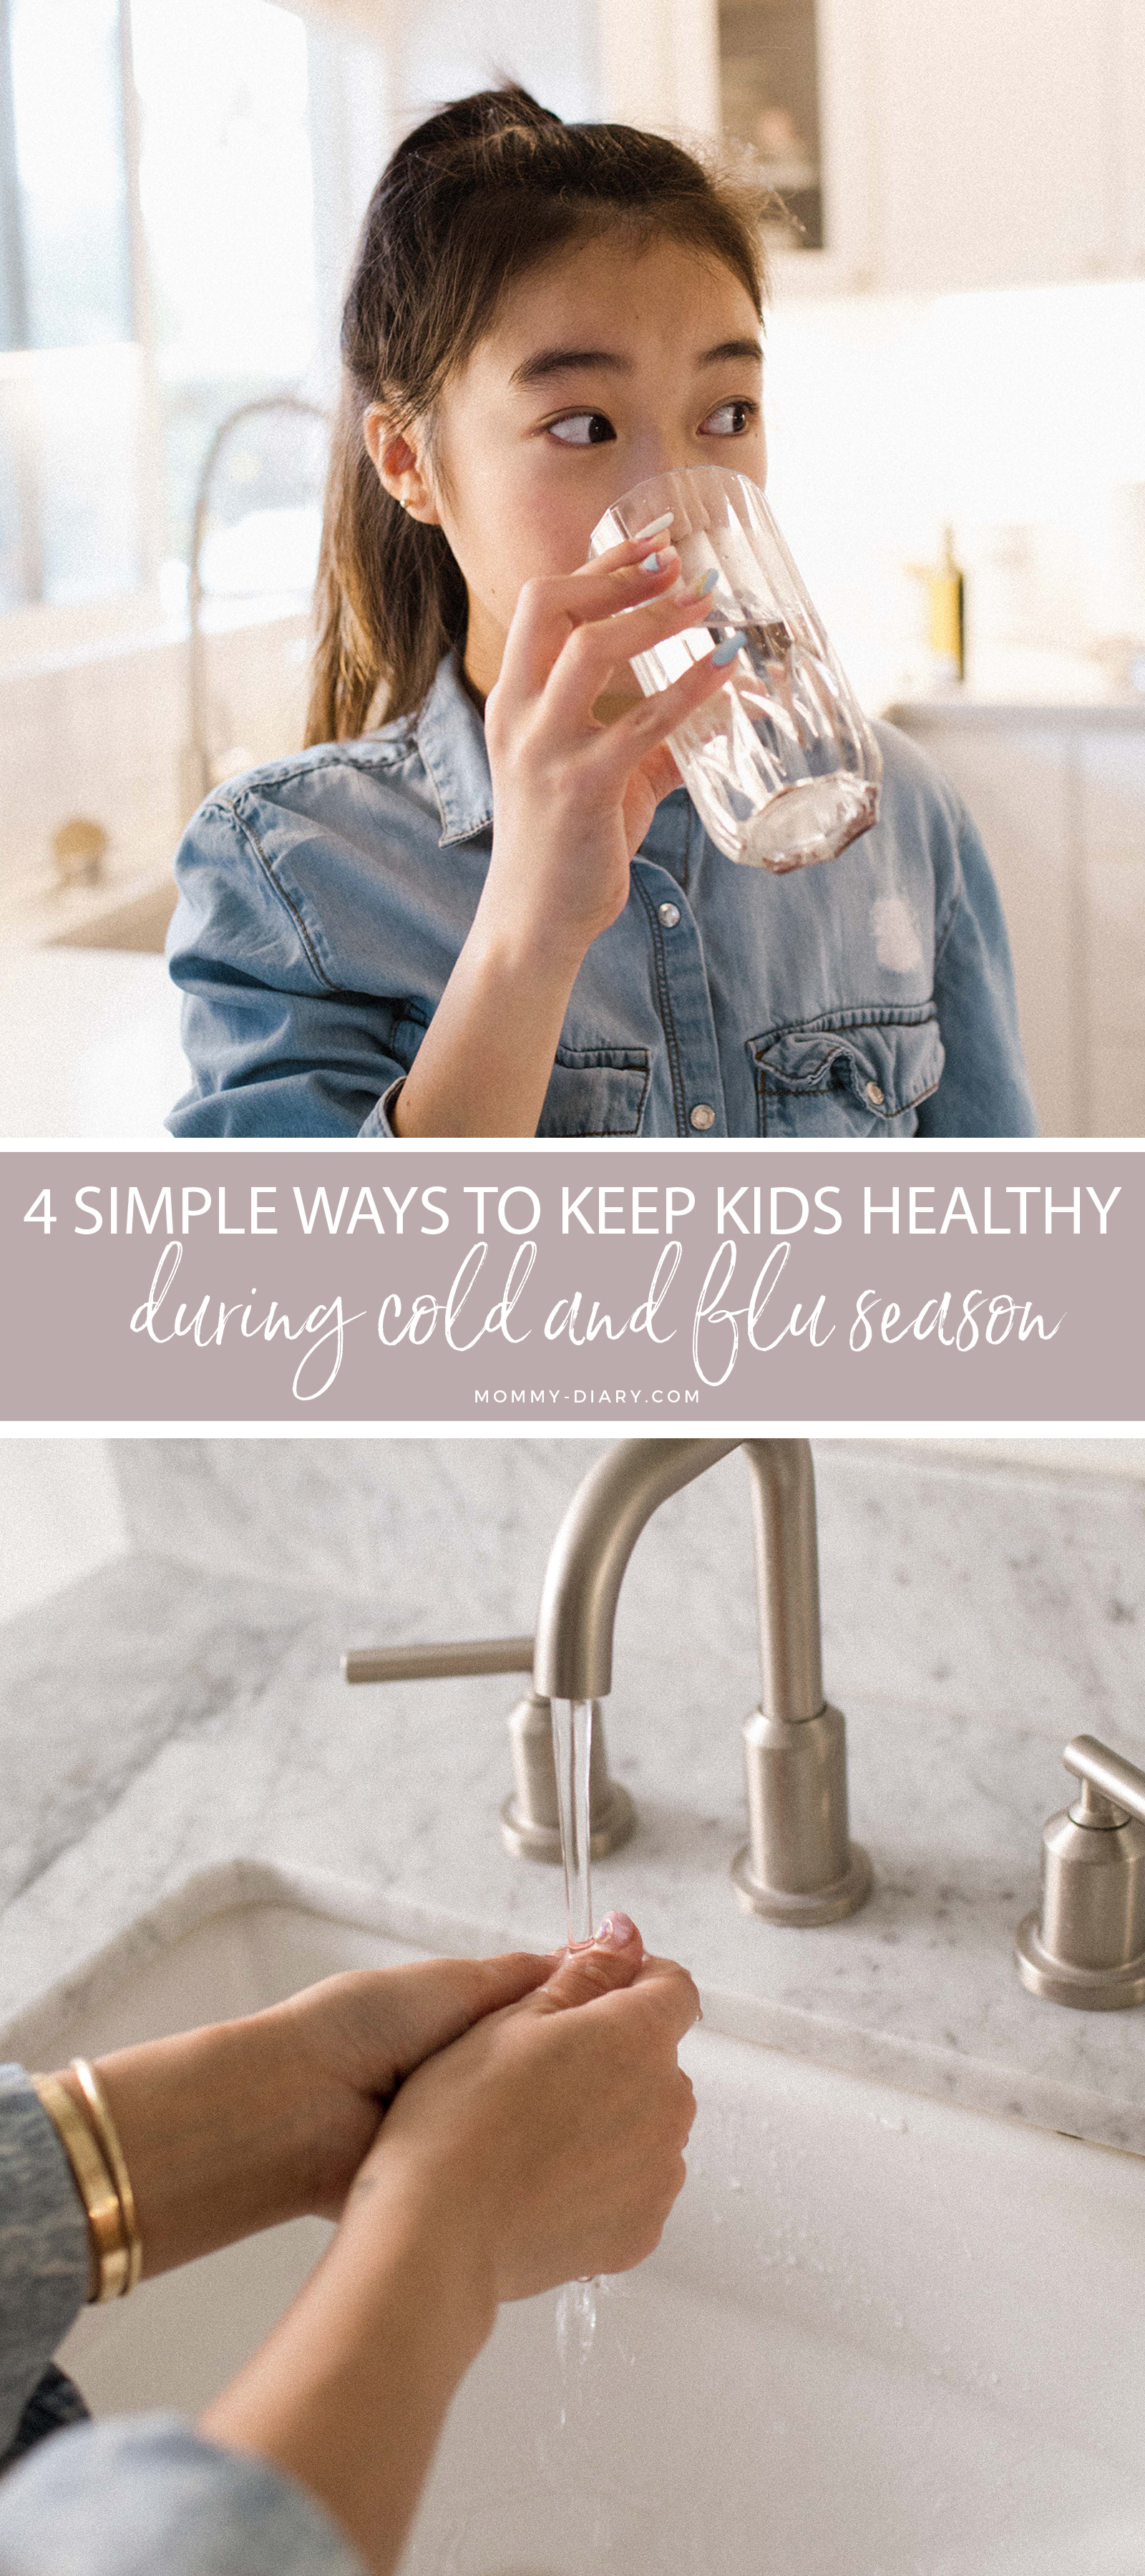 4 Simple Ways to Keep Kids Healthy During Flu Season